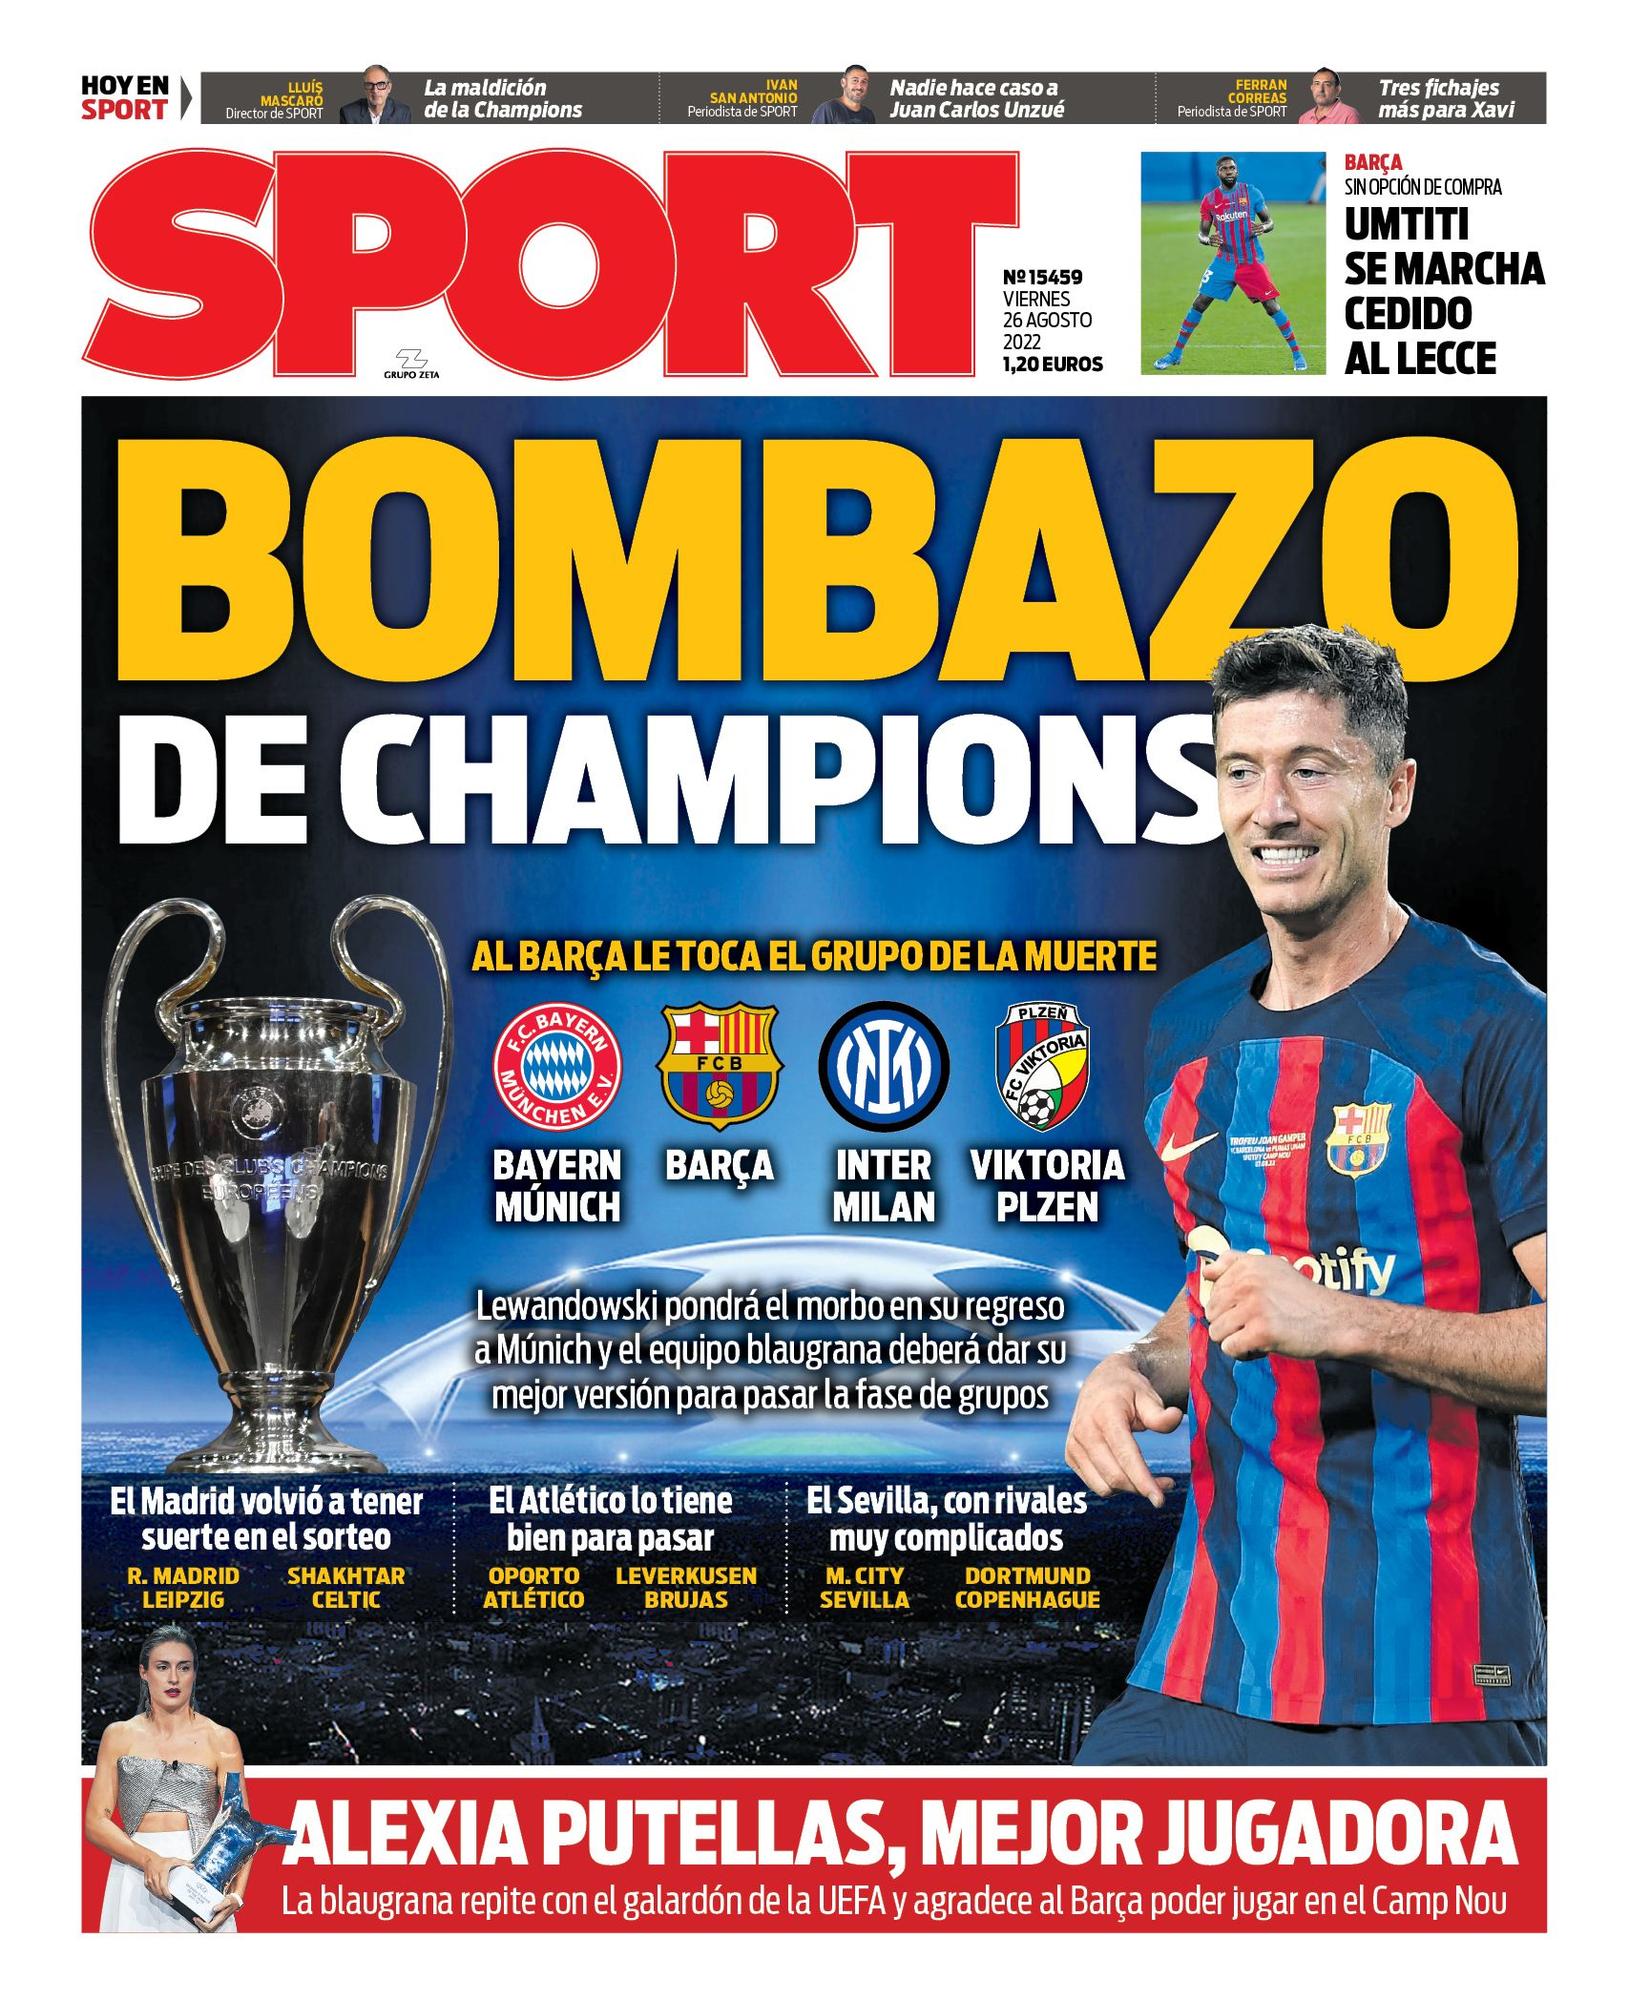 'Bombazo de Champions' es nuestra portada de hoy viernes 26 de agosto